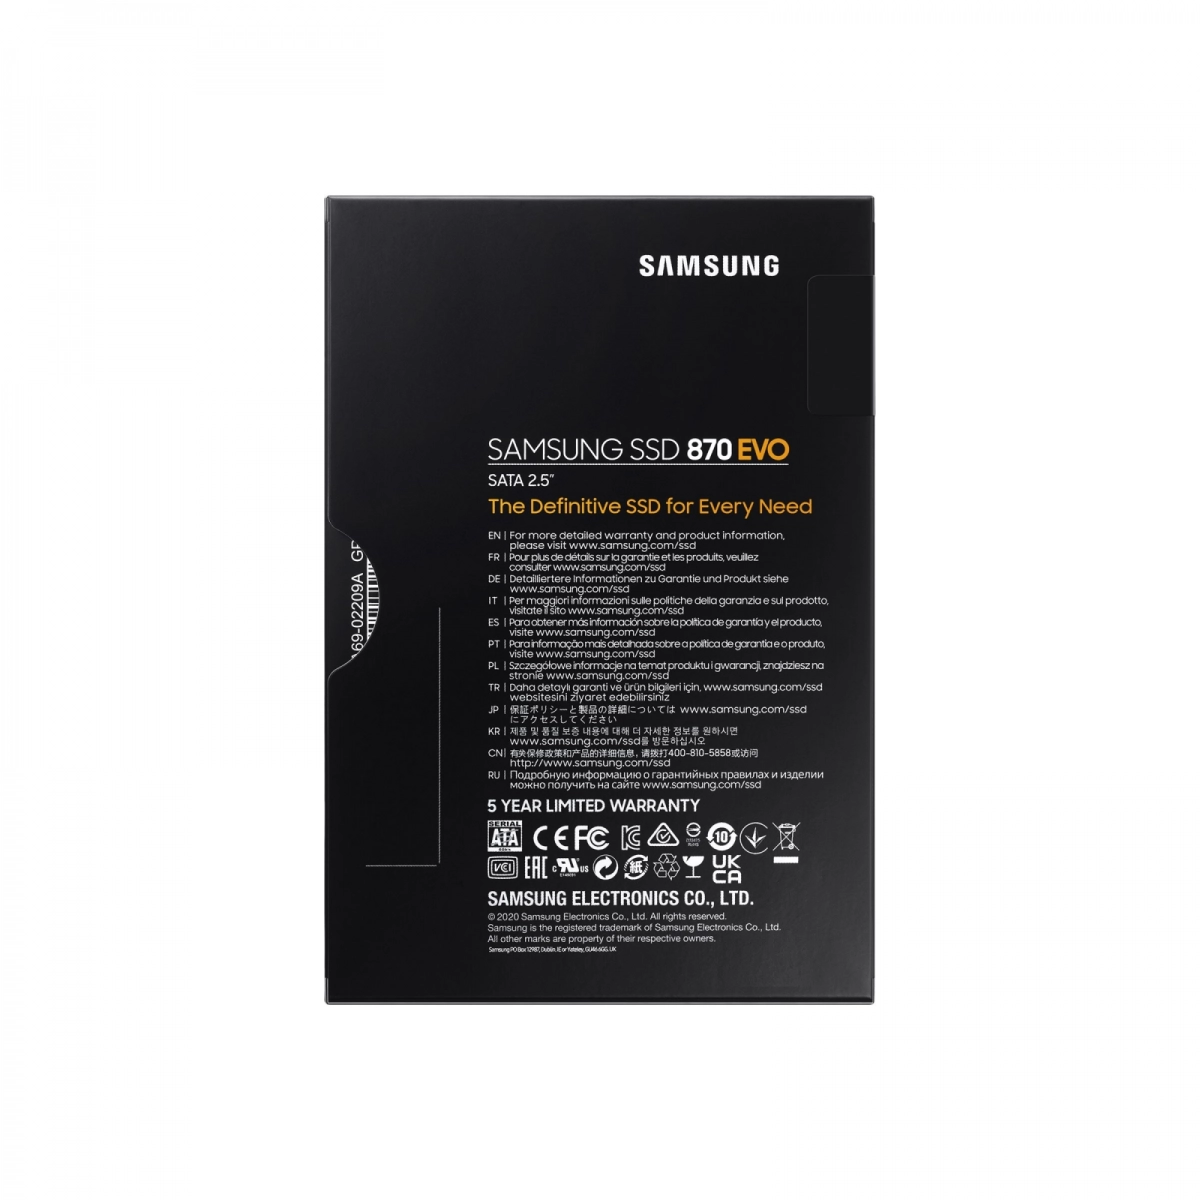 Notebook-Festplatte 1TB, SSD SATA3 für DELL Inspiron 9400